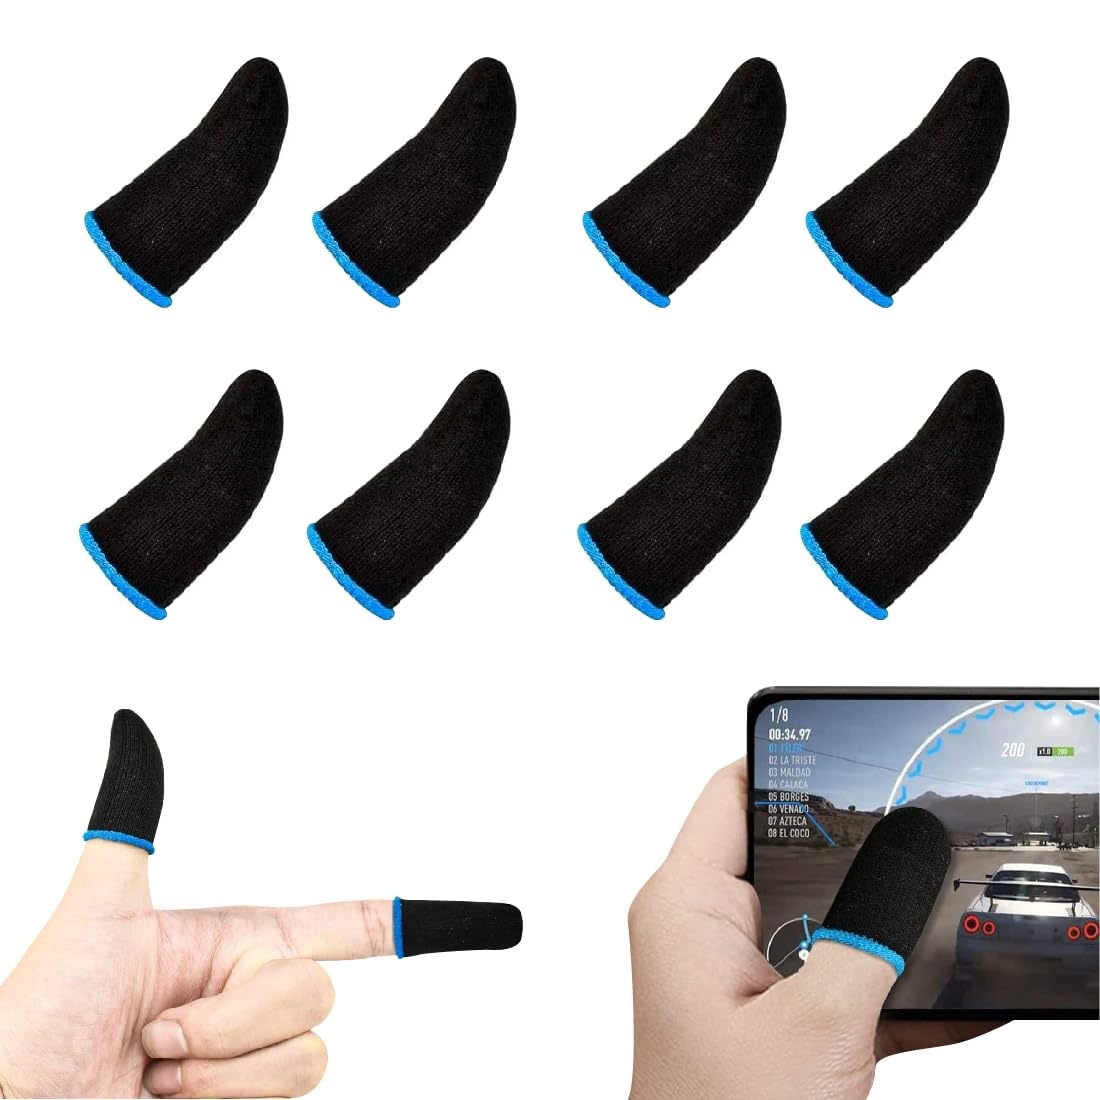 8 Stück Mobile Gaming Finger Sleeve,Mobile Game Finger Sleeve Touchscreen Fingerhülse Anti-Sweat Empfindliche Spiel Handy Kontroller Atmungsaktiv Anti-Schweiß Fingerlinge Gaming Zubehör